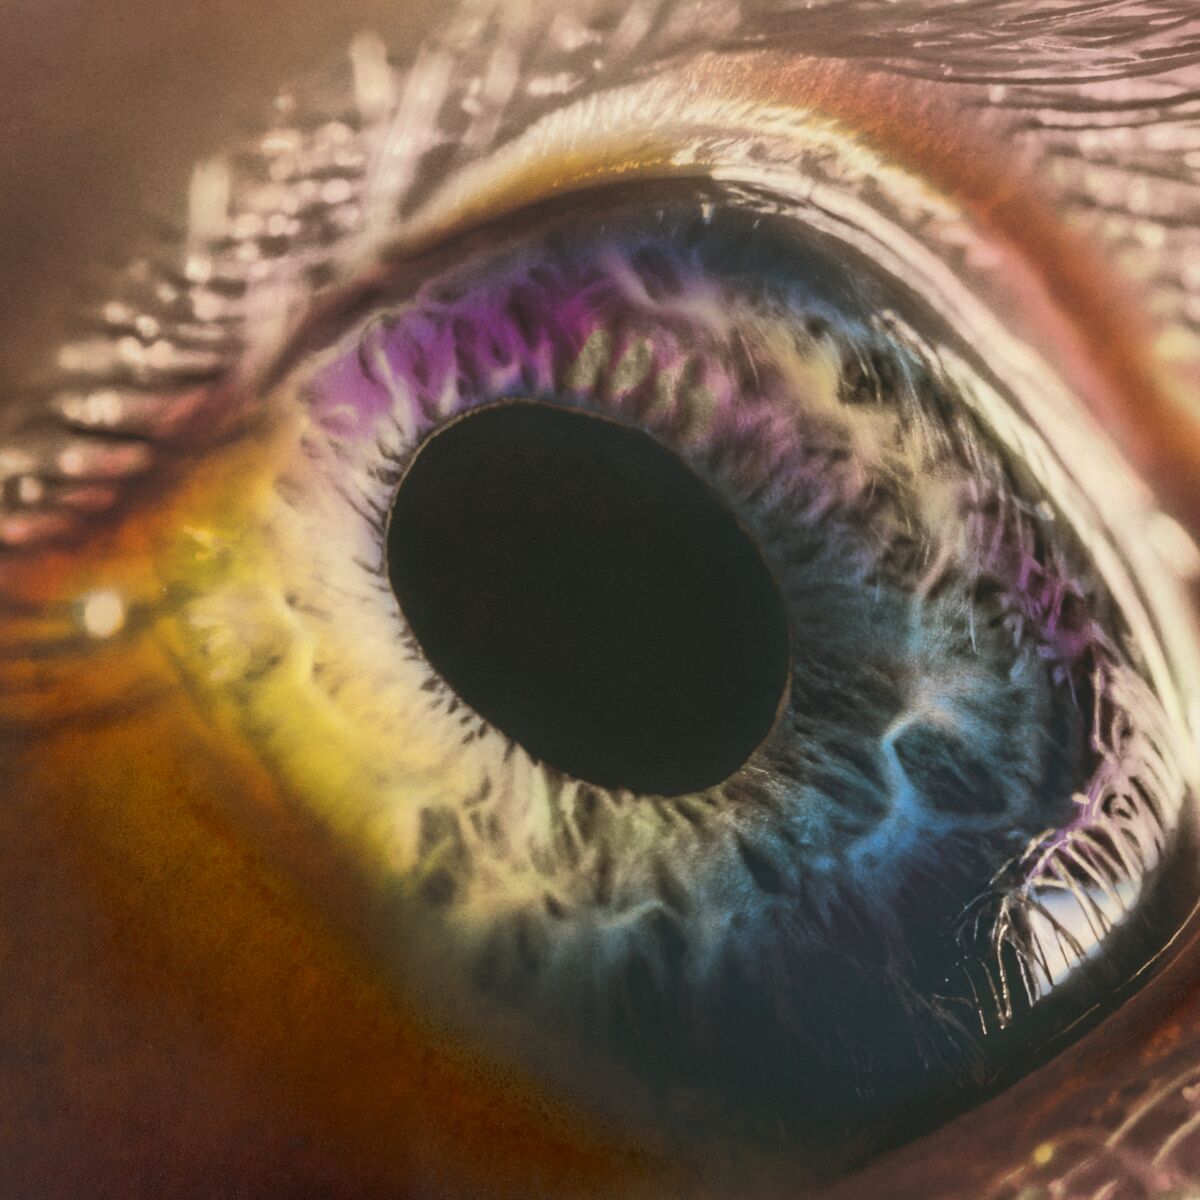 A closeup photograph of an eyeball.